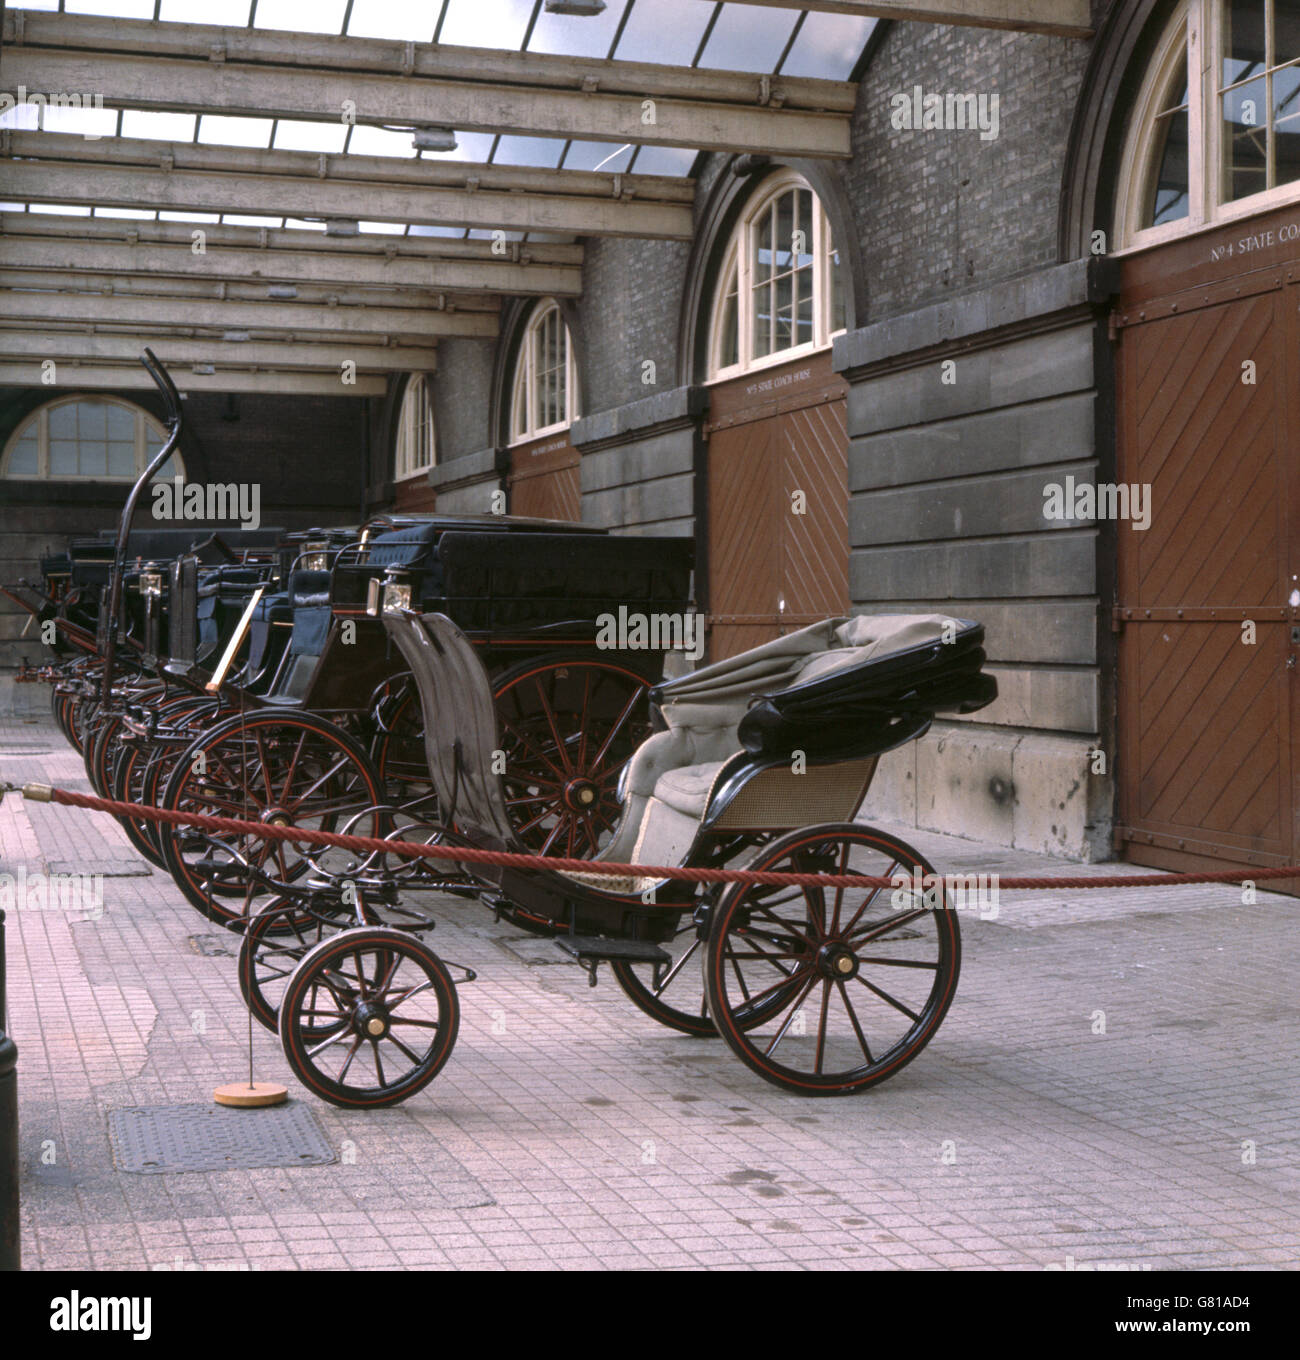 Eine Reihe hochglanzpolierter Transportmittel auf Rädern, die unter Abdeckung im Royal Mews, Buckingham Palace, London, geparkt wurden, als die Mews der Presse gezeigt wurden. Stockfoto